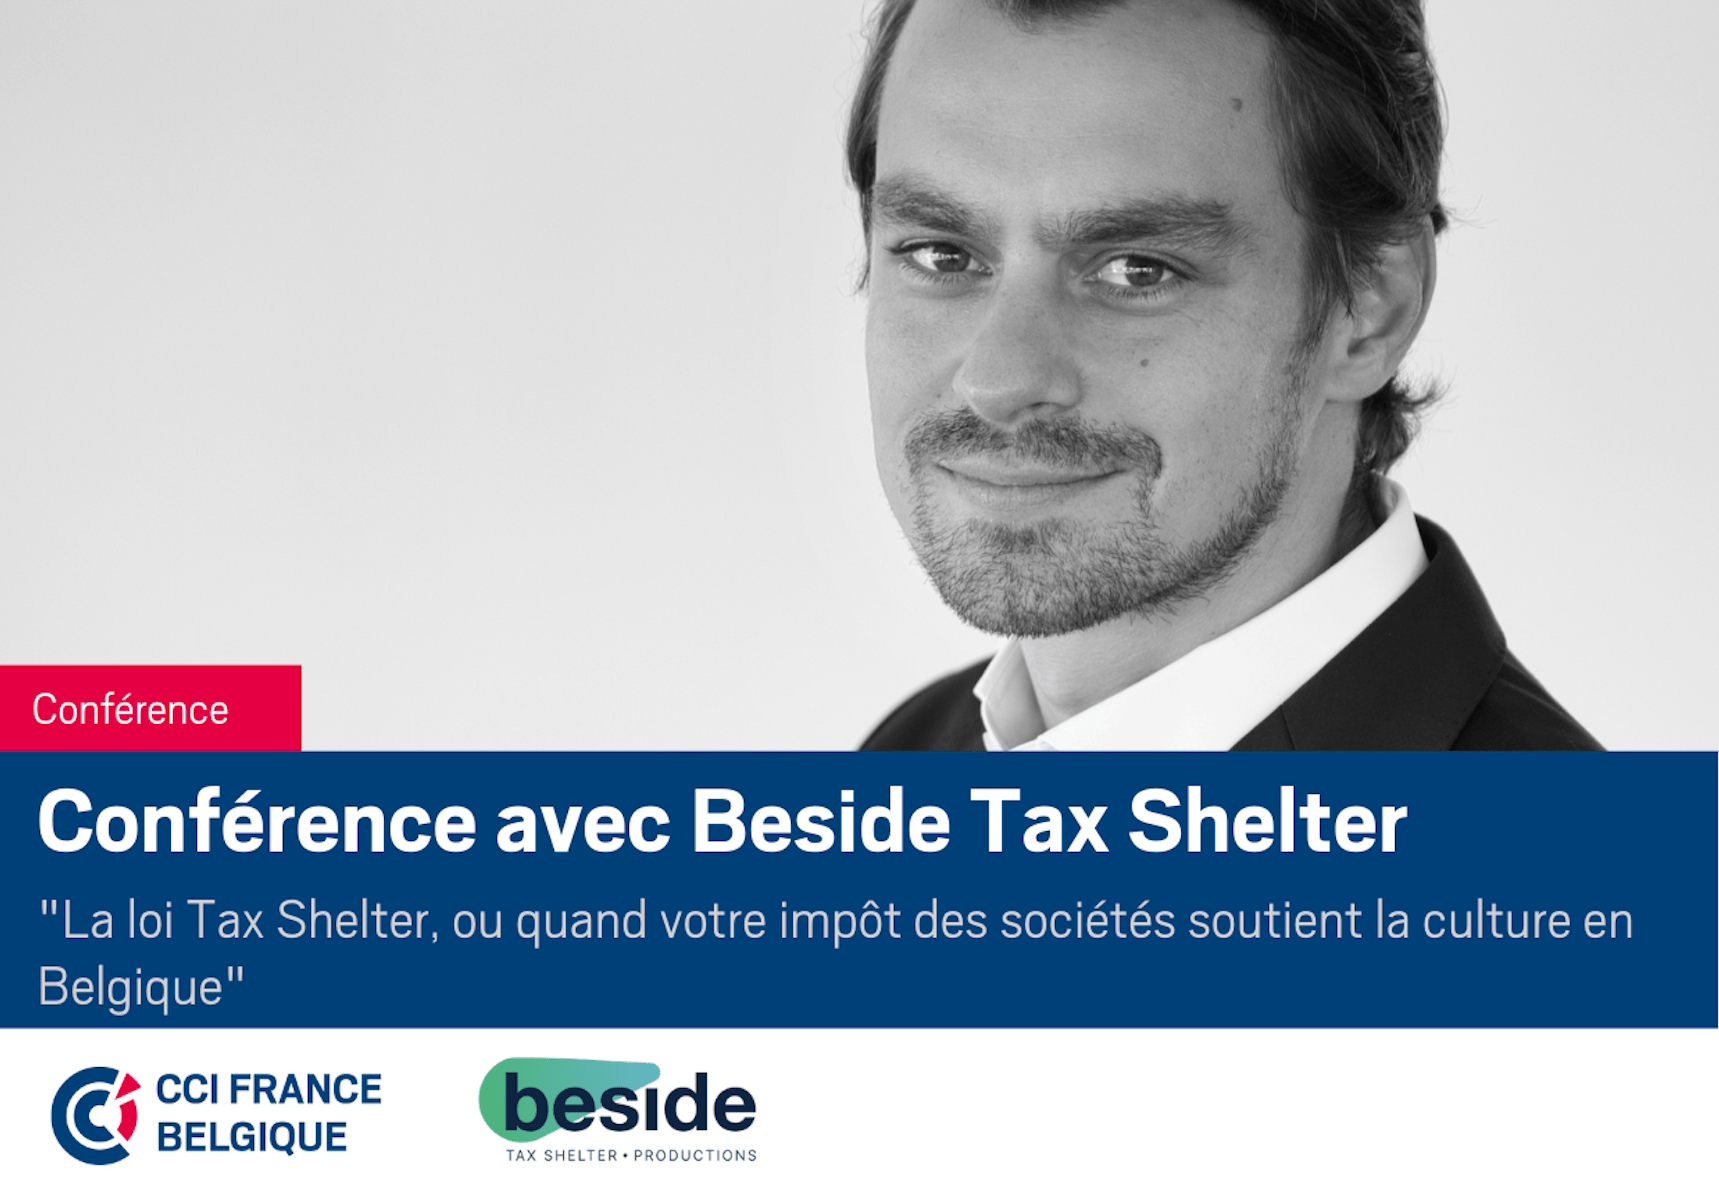 La loi Taxe Shelter, l’initiative fiscale de soutien à l’industrie culturelle belge